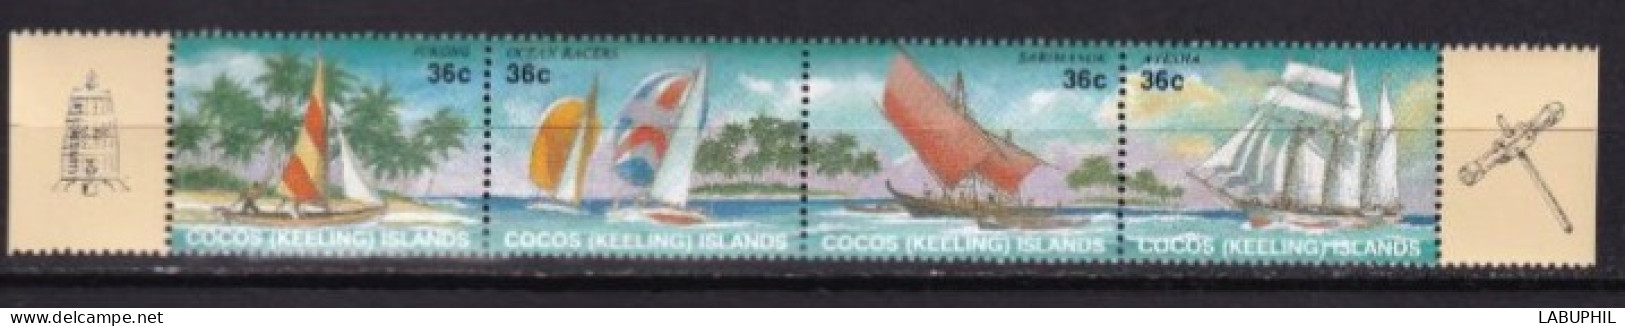 COCOS MNH **  1987  Bateaux - Kokosinseln (Keeling Islands)